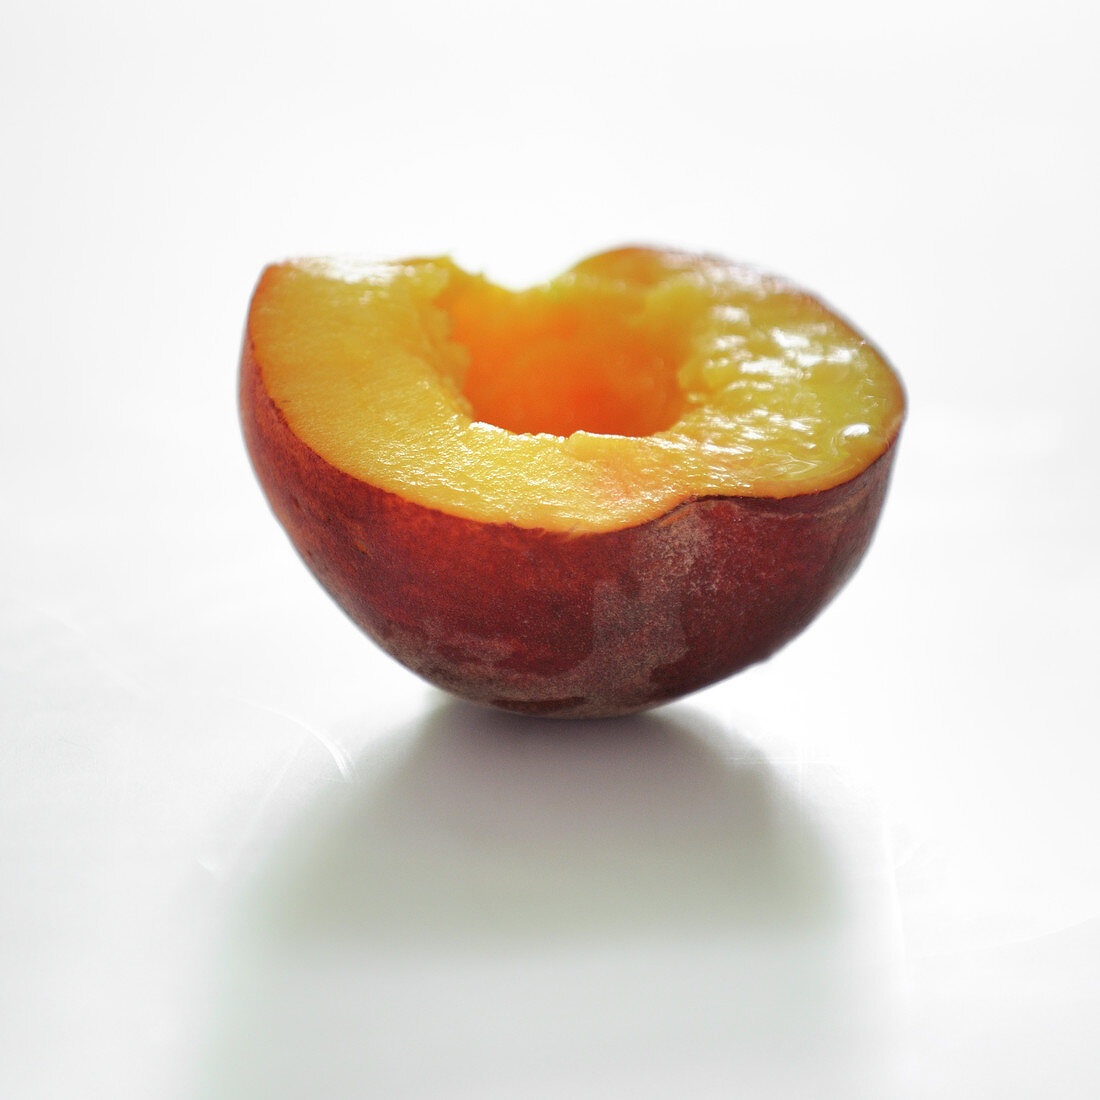 Halber Pfirsich vor weißem Hintergrund